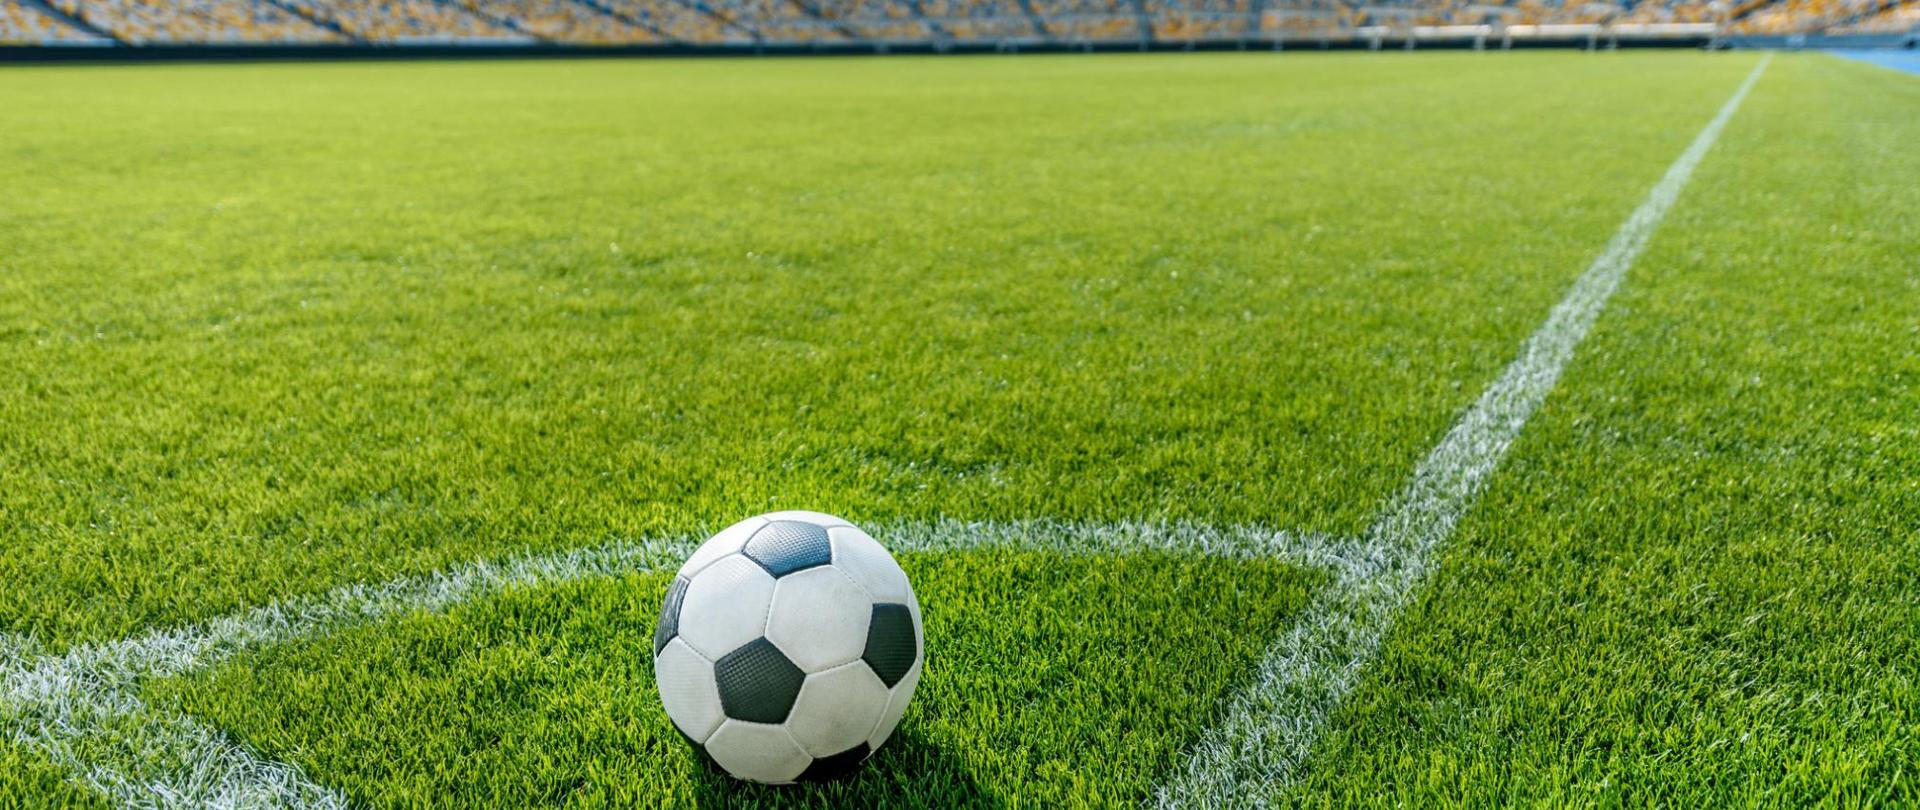 Na zdjęciu jest widoczna piłka nożna na murawie stadionu.